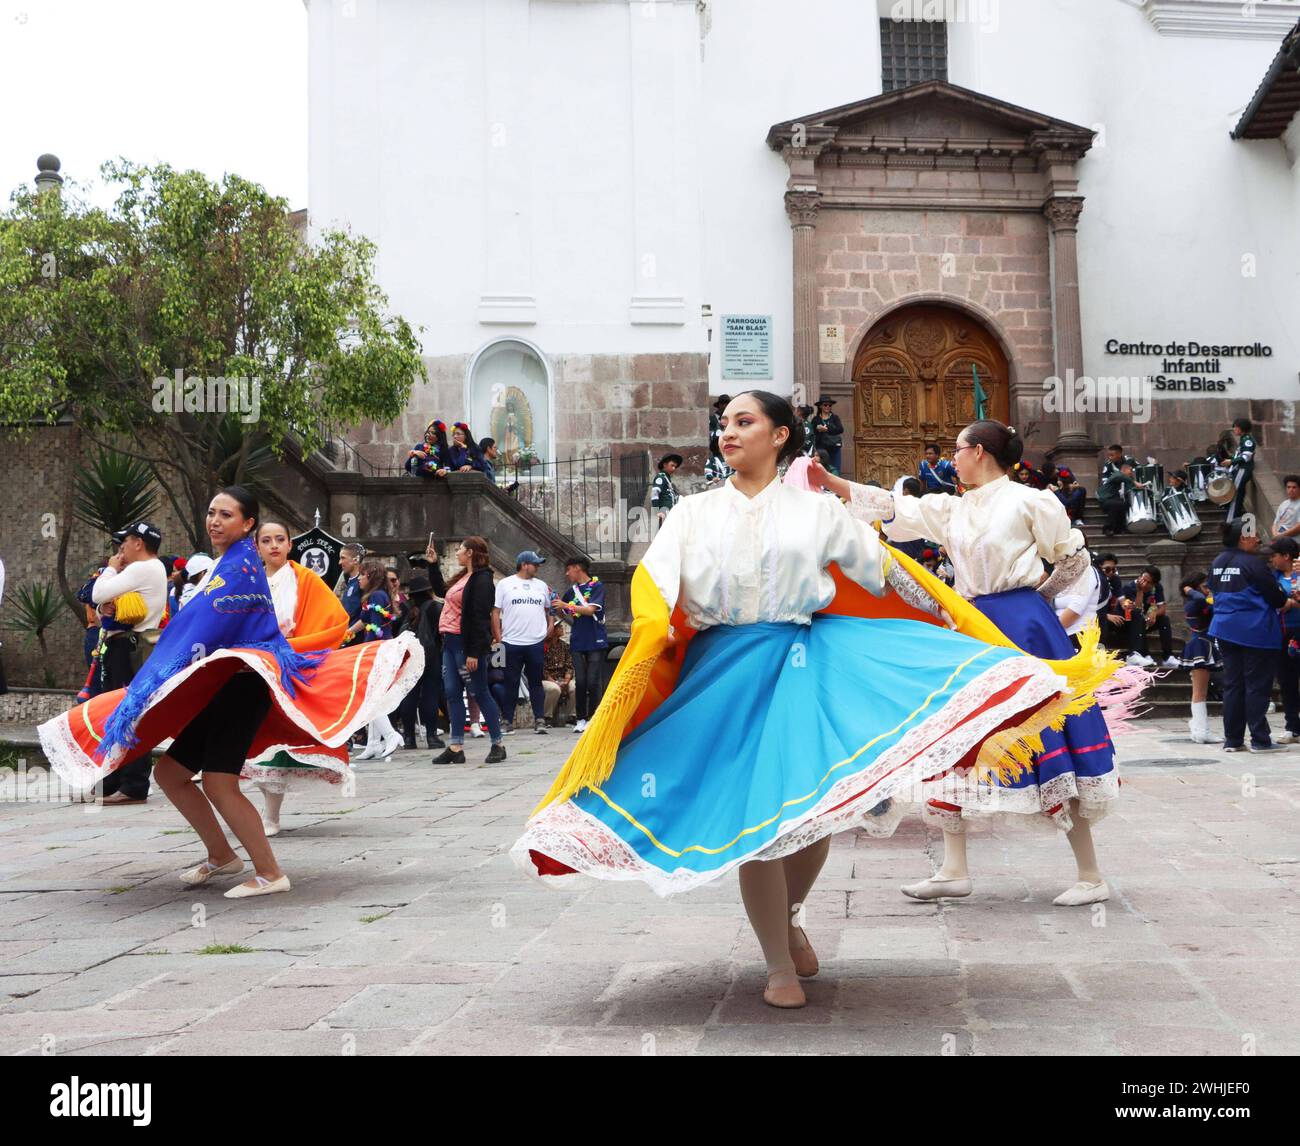 UIO-CARNAVAL-PLAZA-SAN-BLAS Quito, sabado 10 de febrero del 2024 Con Bandas de Paz, bailes tradicionales, canon de espuma, ninos, jovenes y adultos, festejan el feriado de carnaval, en la Plaza de San Blas, Centro Historico. Fotos:Rolando Enriquez/API Quito Pichincha Ecuador ACE-UIO-CARNAVAL-PLAZA-SAN-BLAS-a5887f115f836c6a563e07e75669de56 *** UIO CARNAVAL PLAZA SAN BLAS Quito, Saturday February 10, 2024 With bands of peace, traditional dances, foam canon, children, youth and adults, celebrate the carnival holiday in the Plaza de San Blas, Centro Historico Photos Rolando Enriquez API Quito Pich Stock Photo